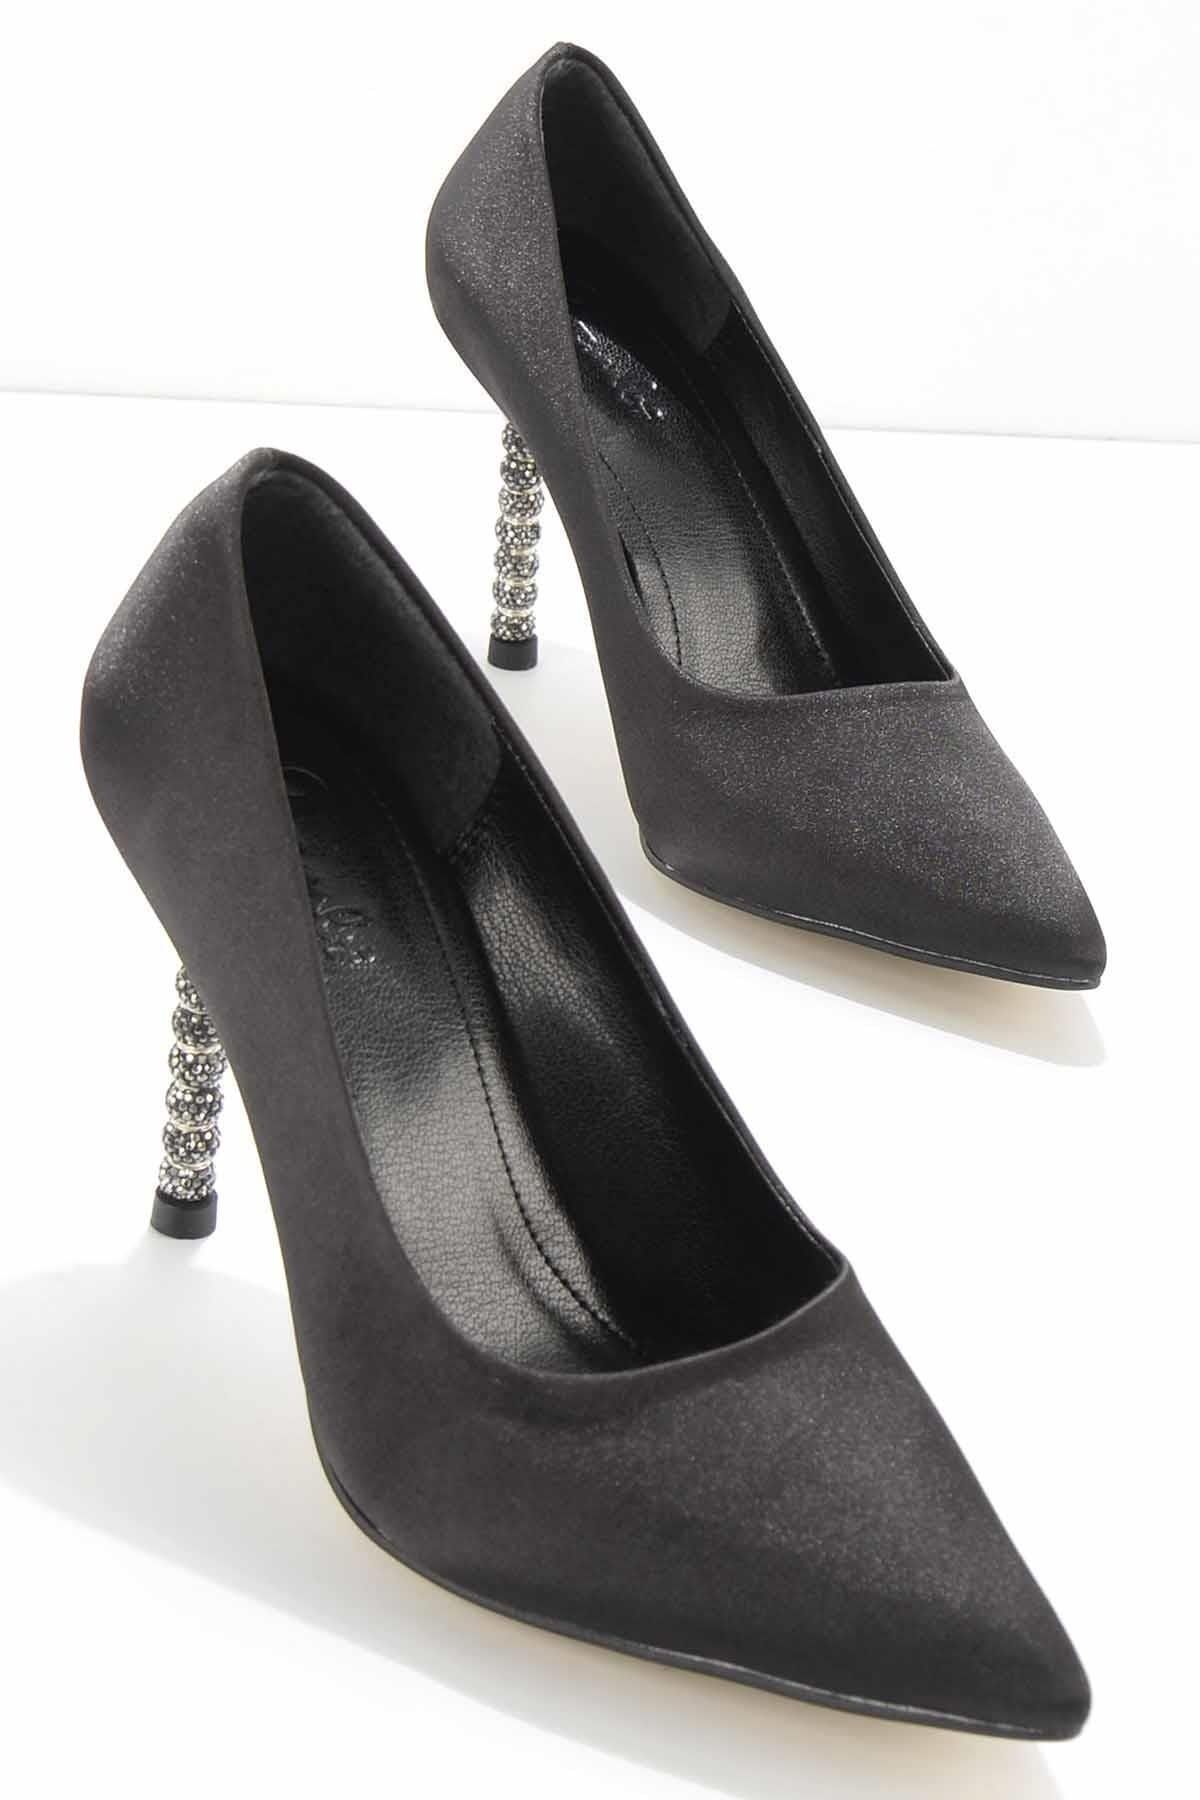 bambi siyah saten kadın abiye ayakkabı k01205090538 fiyatı yorumları